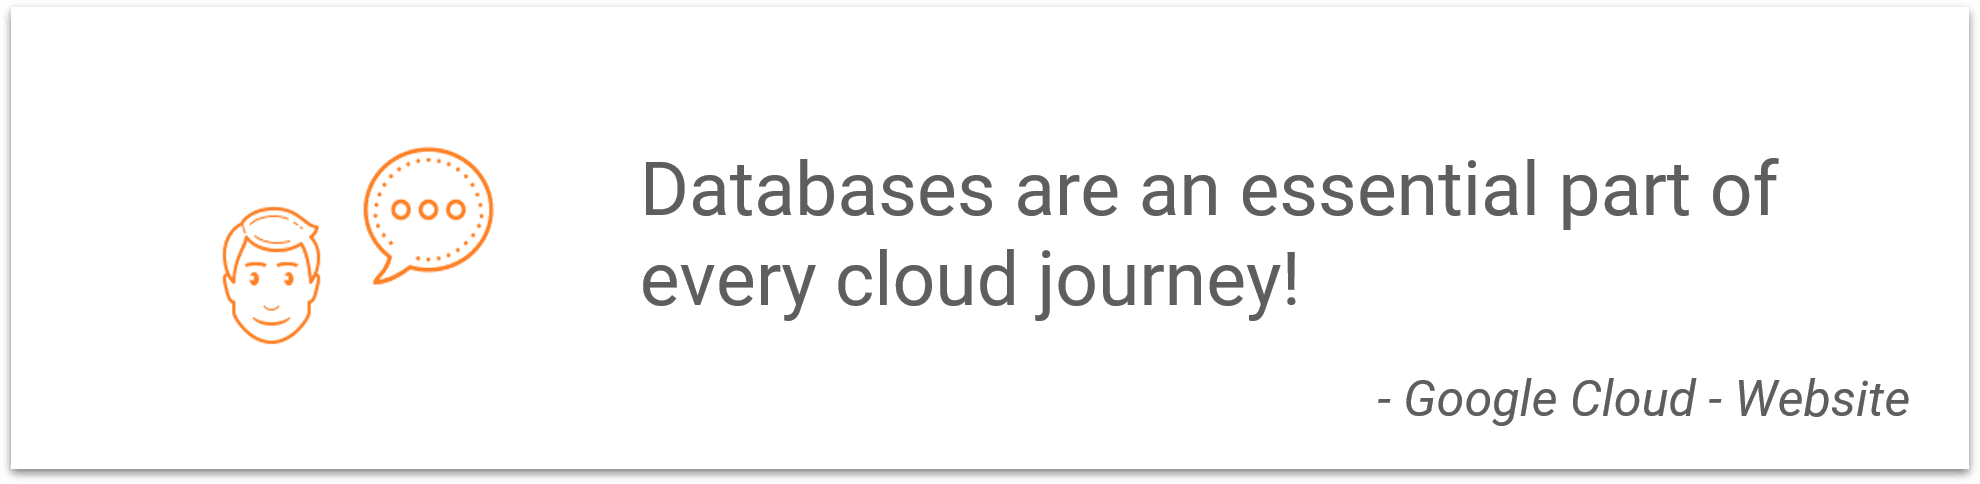 Legacy Modernization for Databases